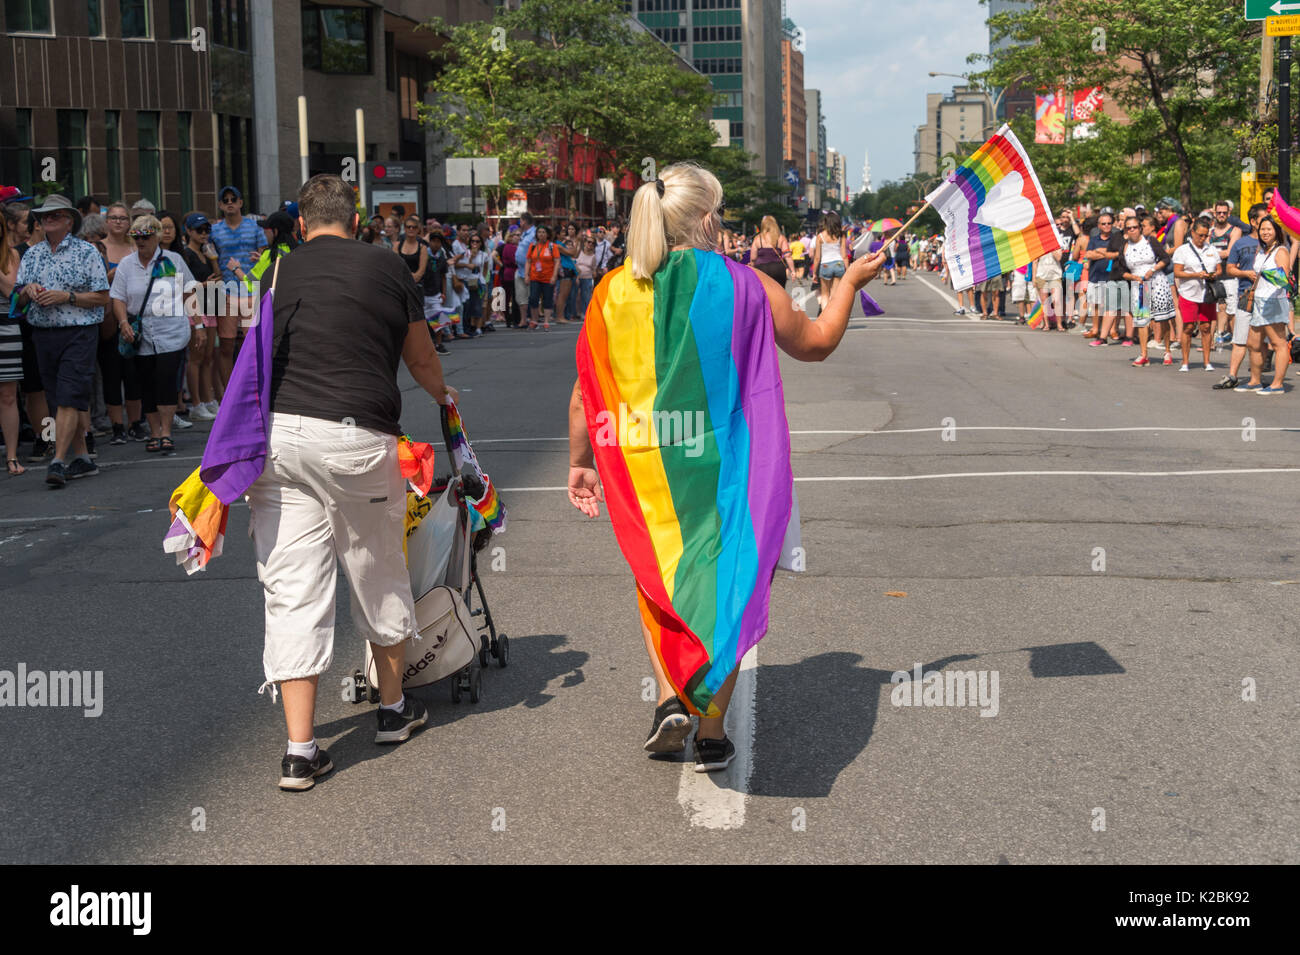 Montréal, CA - 20 août 2017 : Femme avec drapeau gay arc-en-ciel sur le dos de prendre part à la parade de la Fierté gaie de Montréal. Banque D'Images